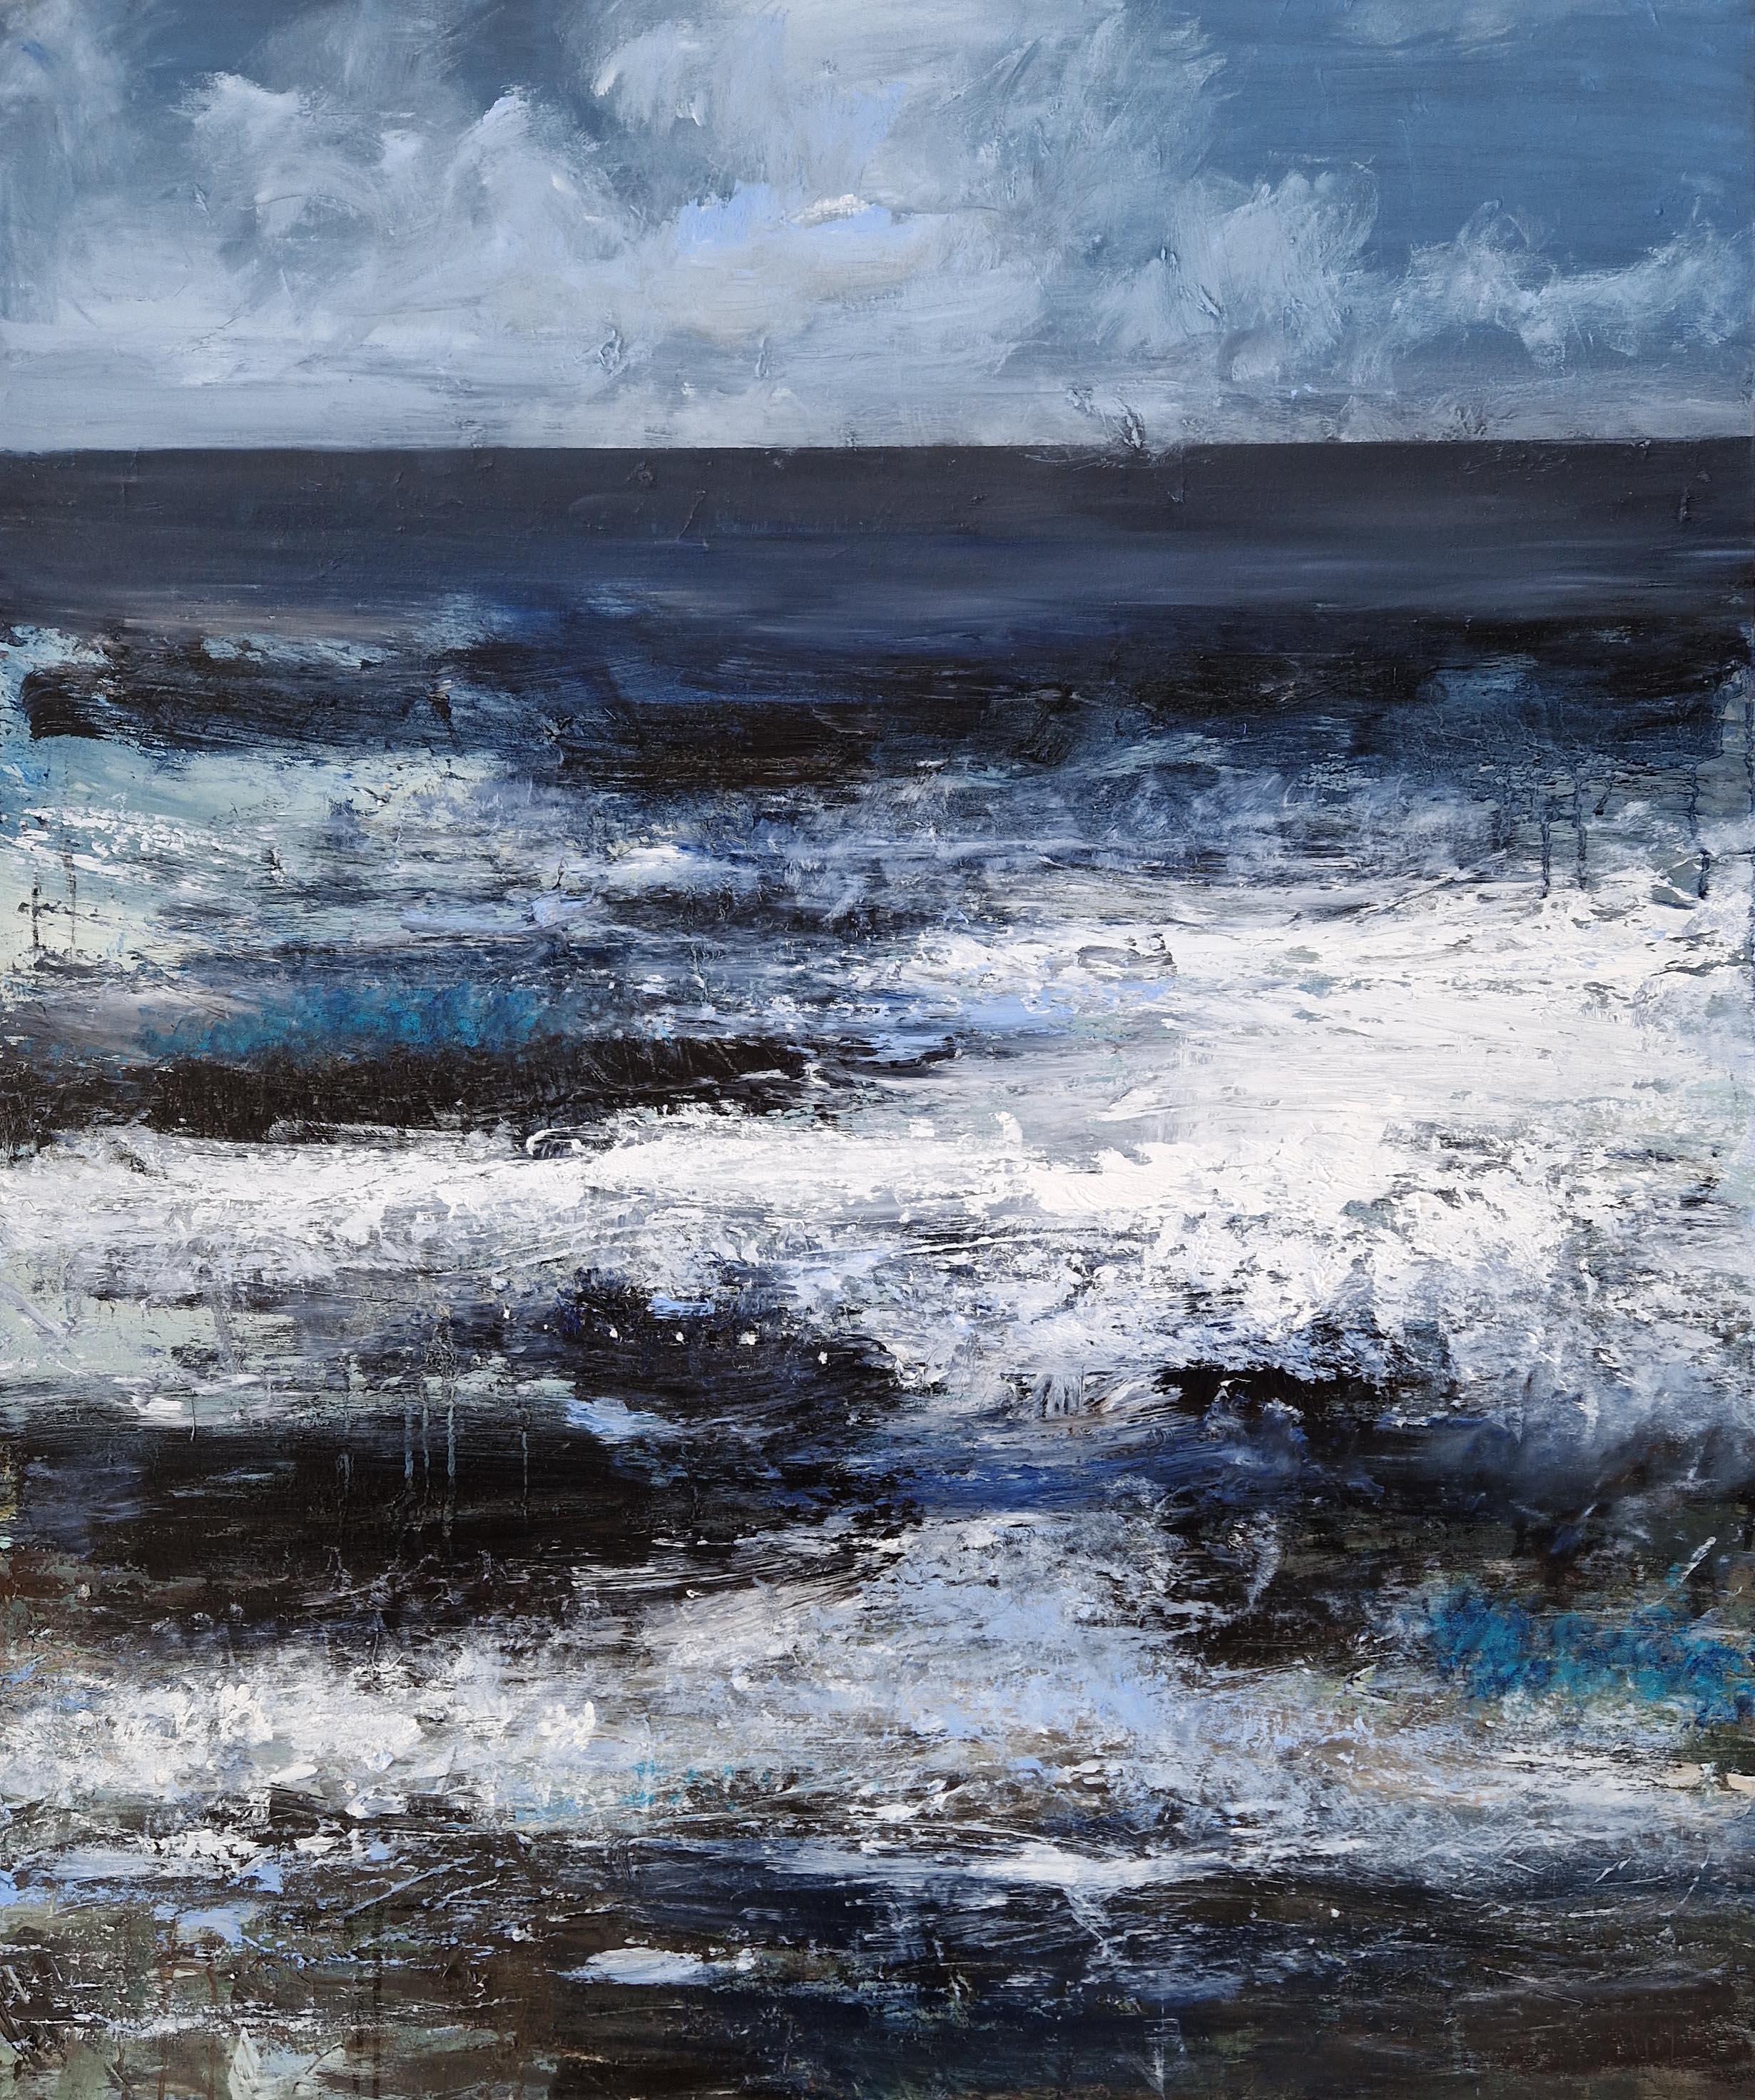 Meeresgischt und Salz in der Luft VI – Painting von Hannah Ivory Baker